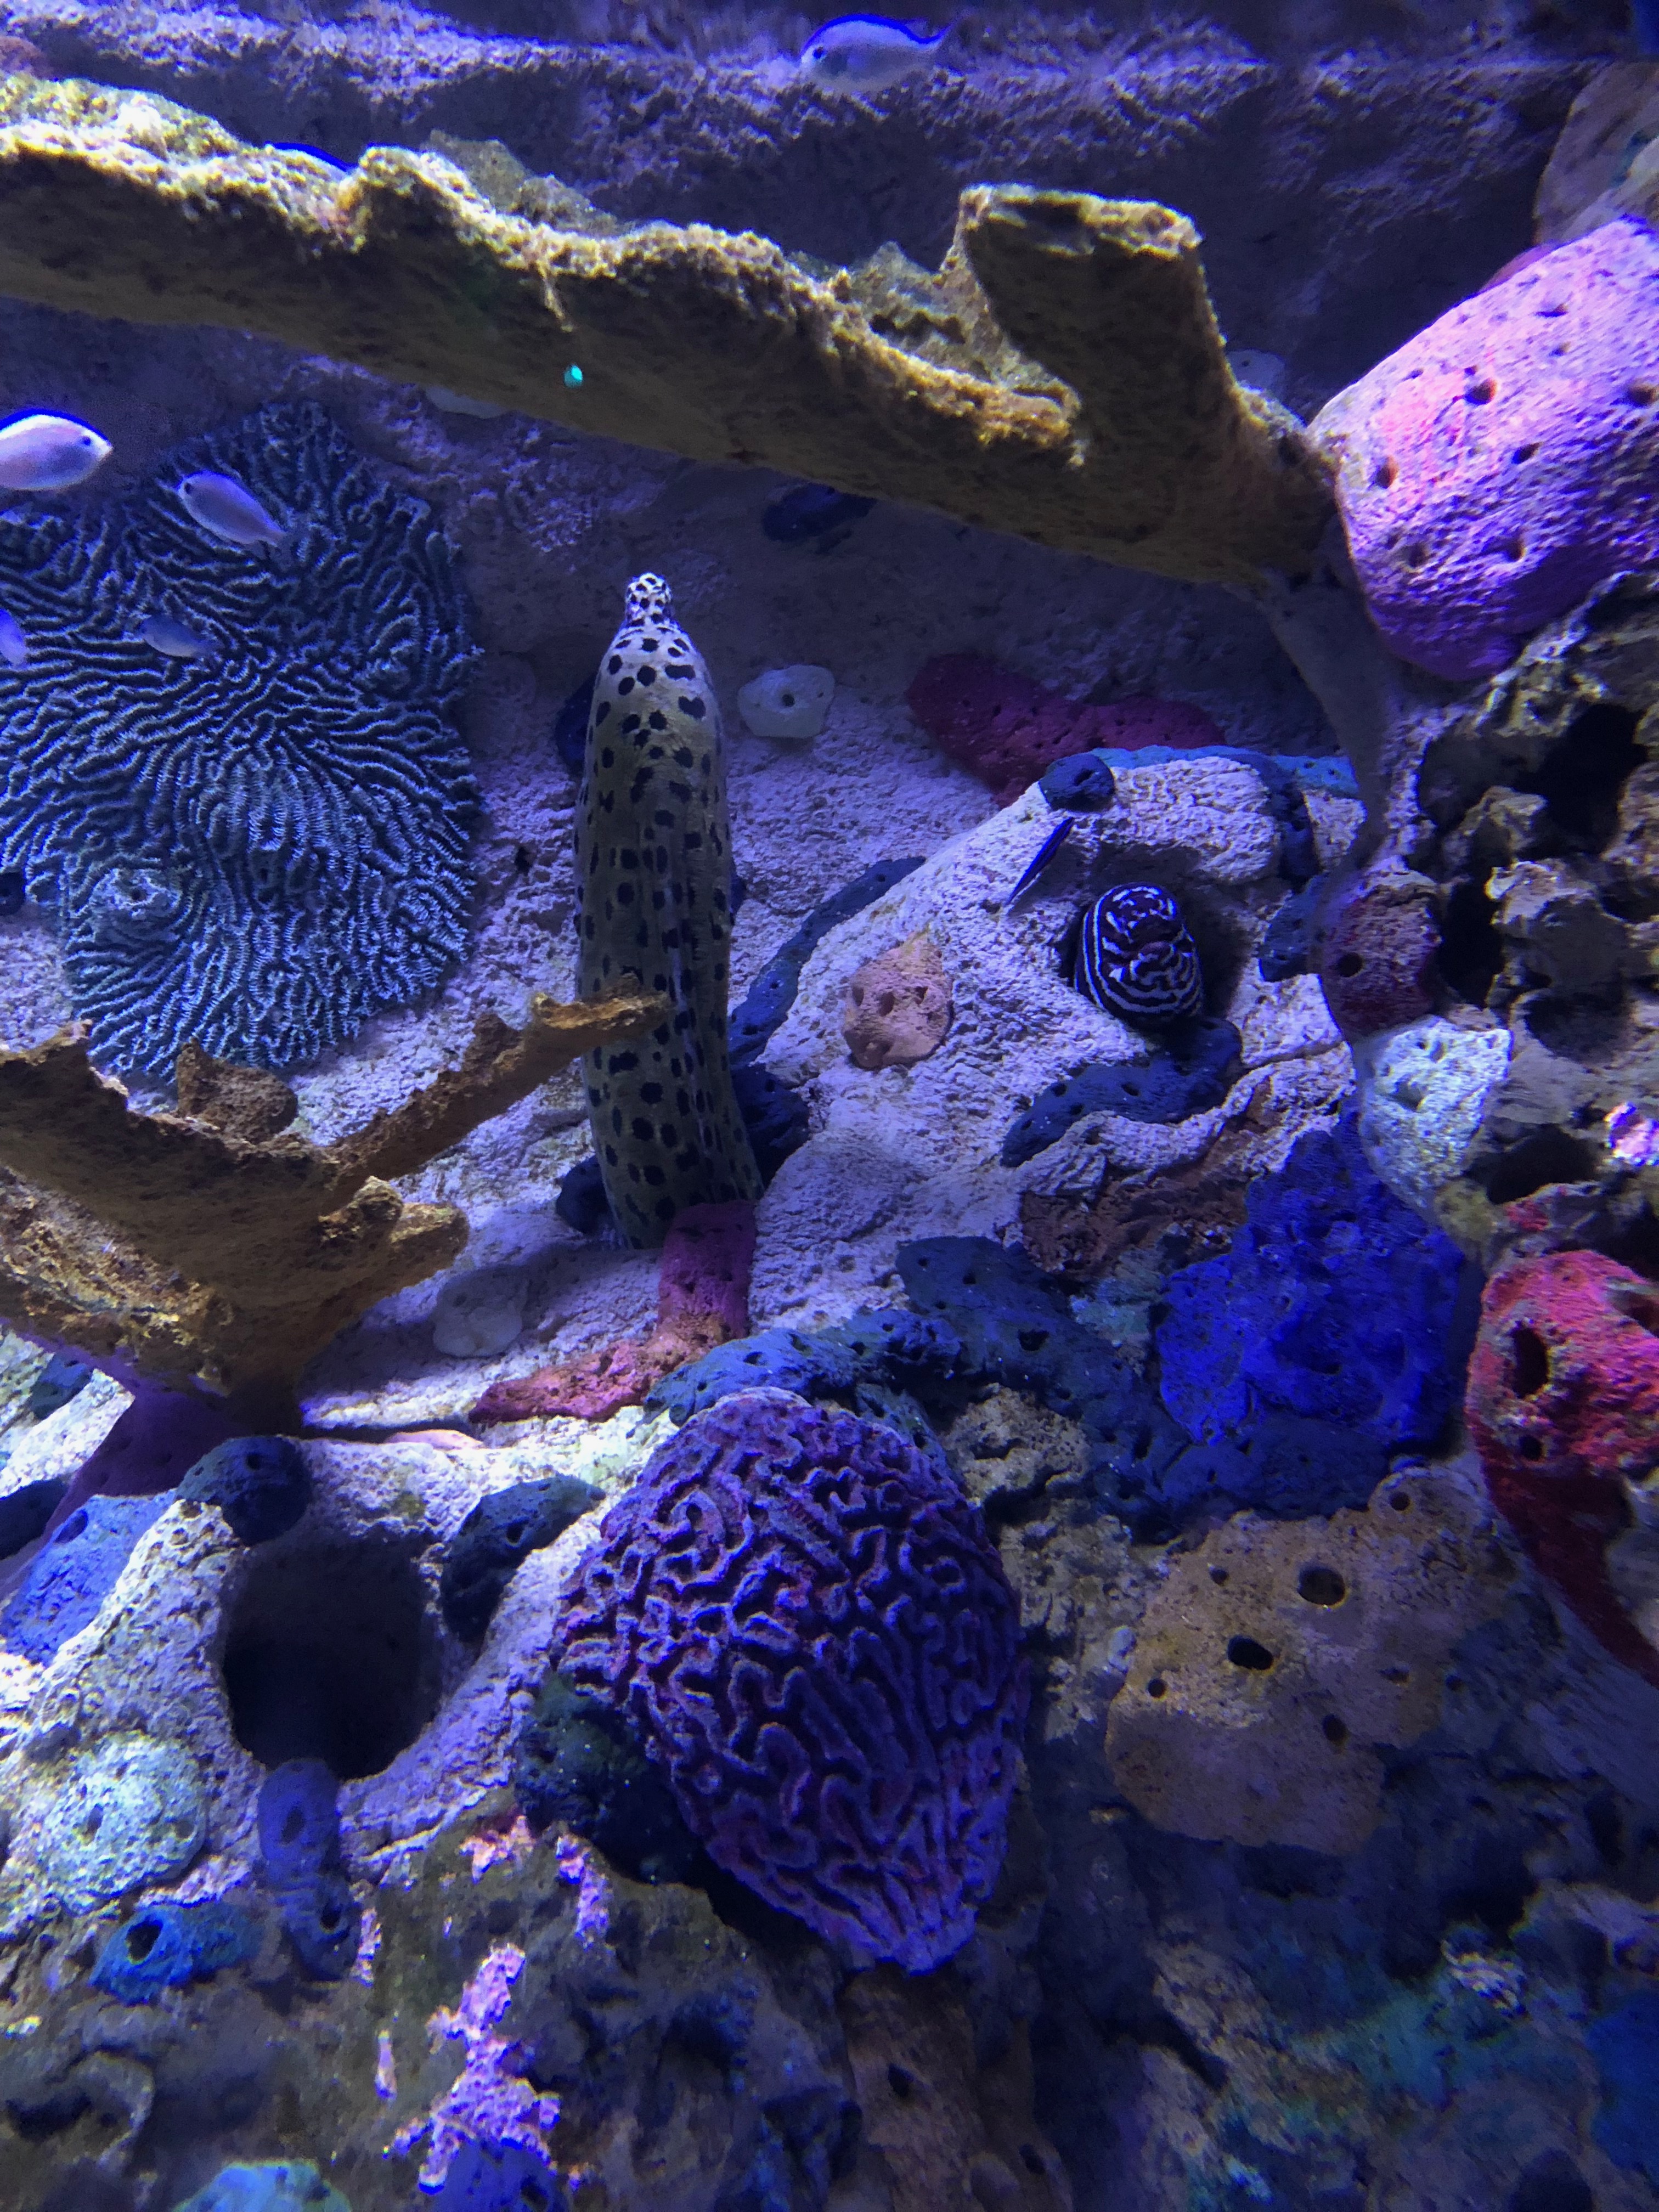 Moray Eel - Ripley's Aquarium in Gatlinburg, TN